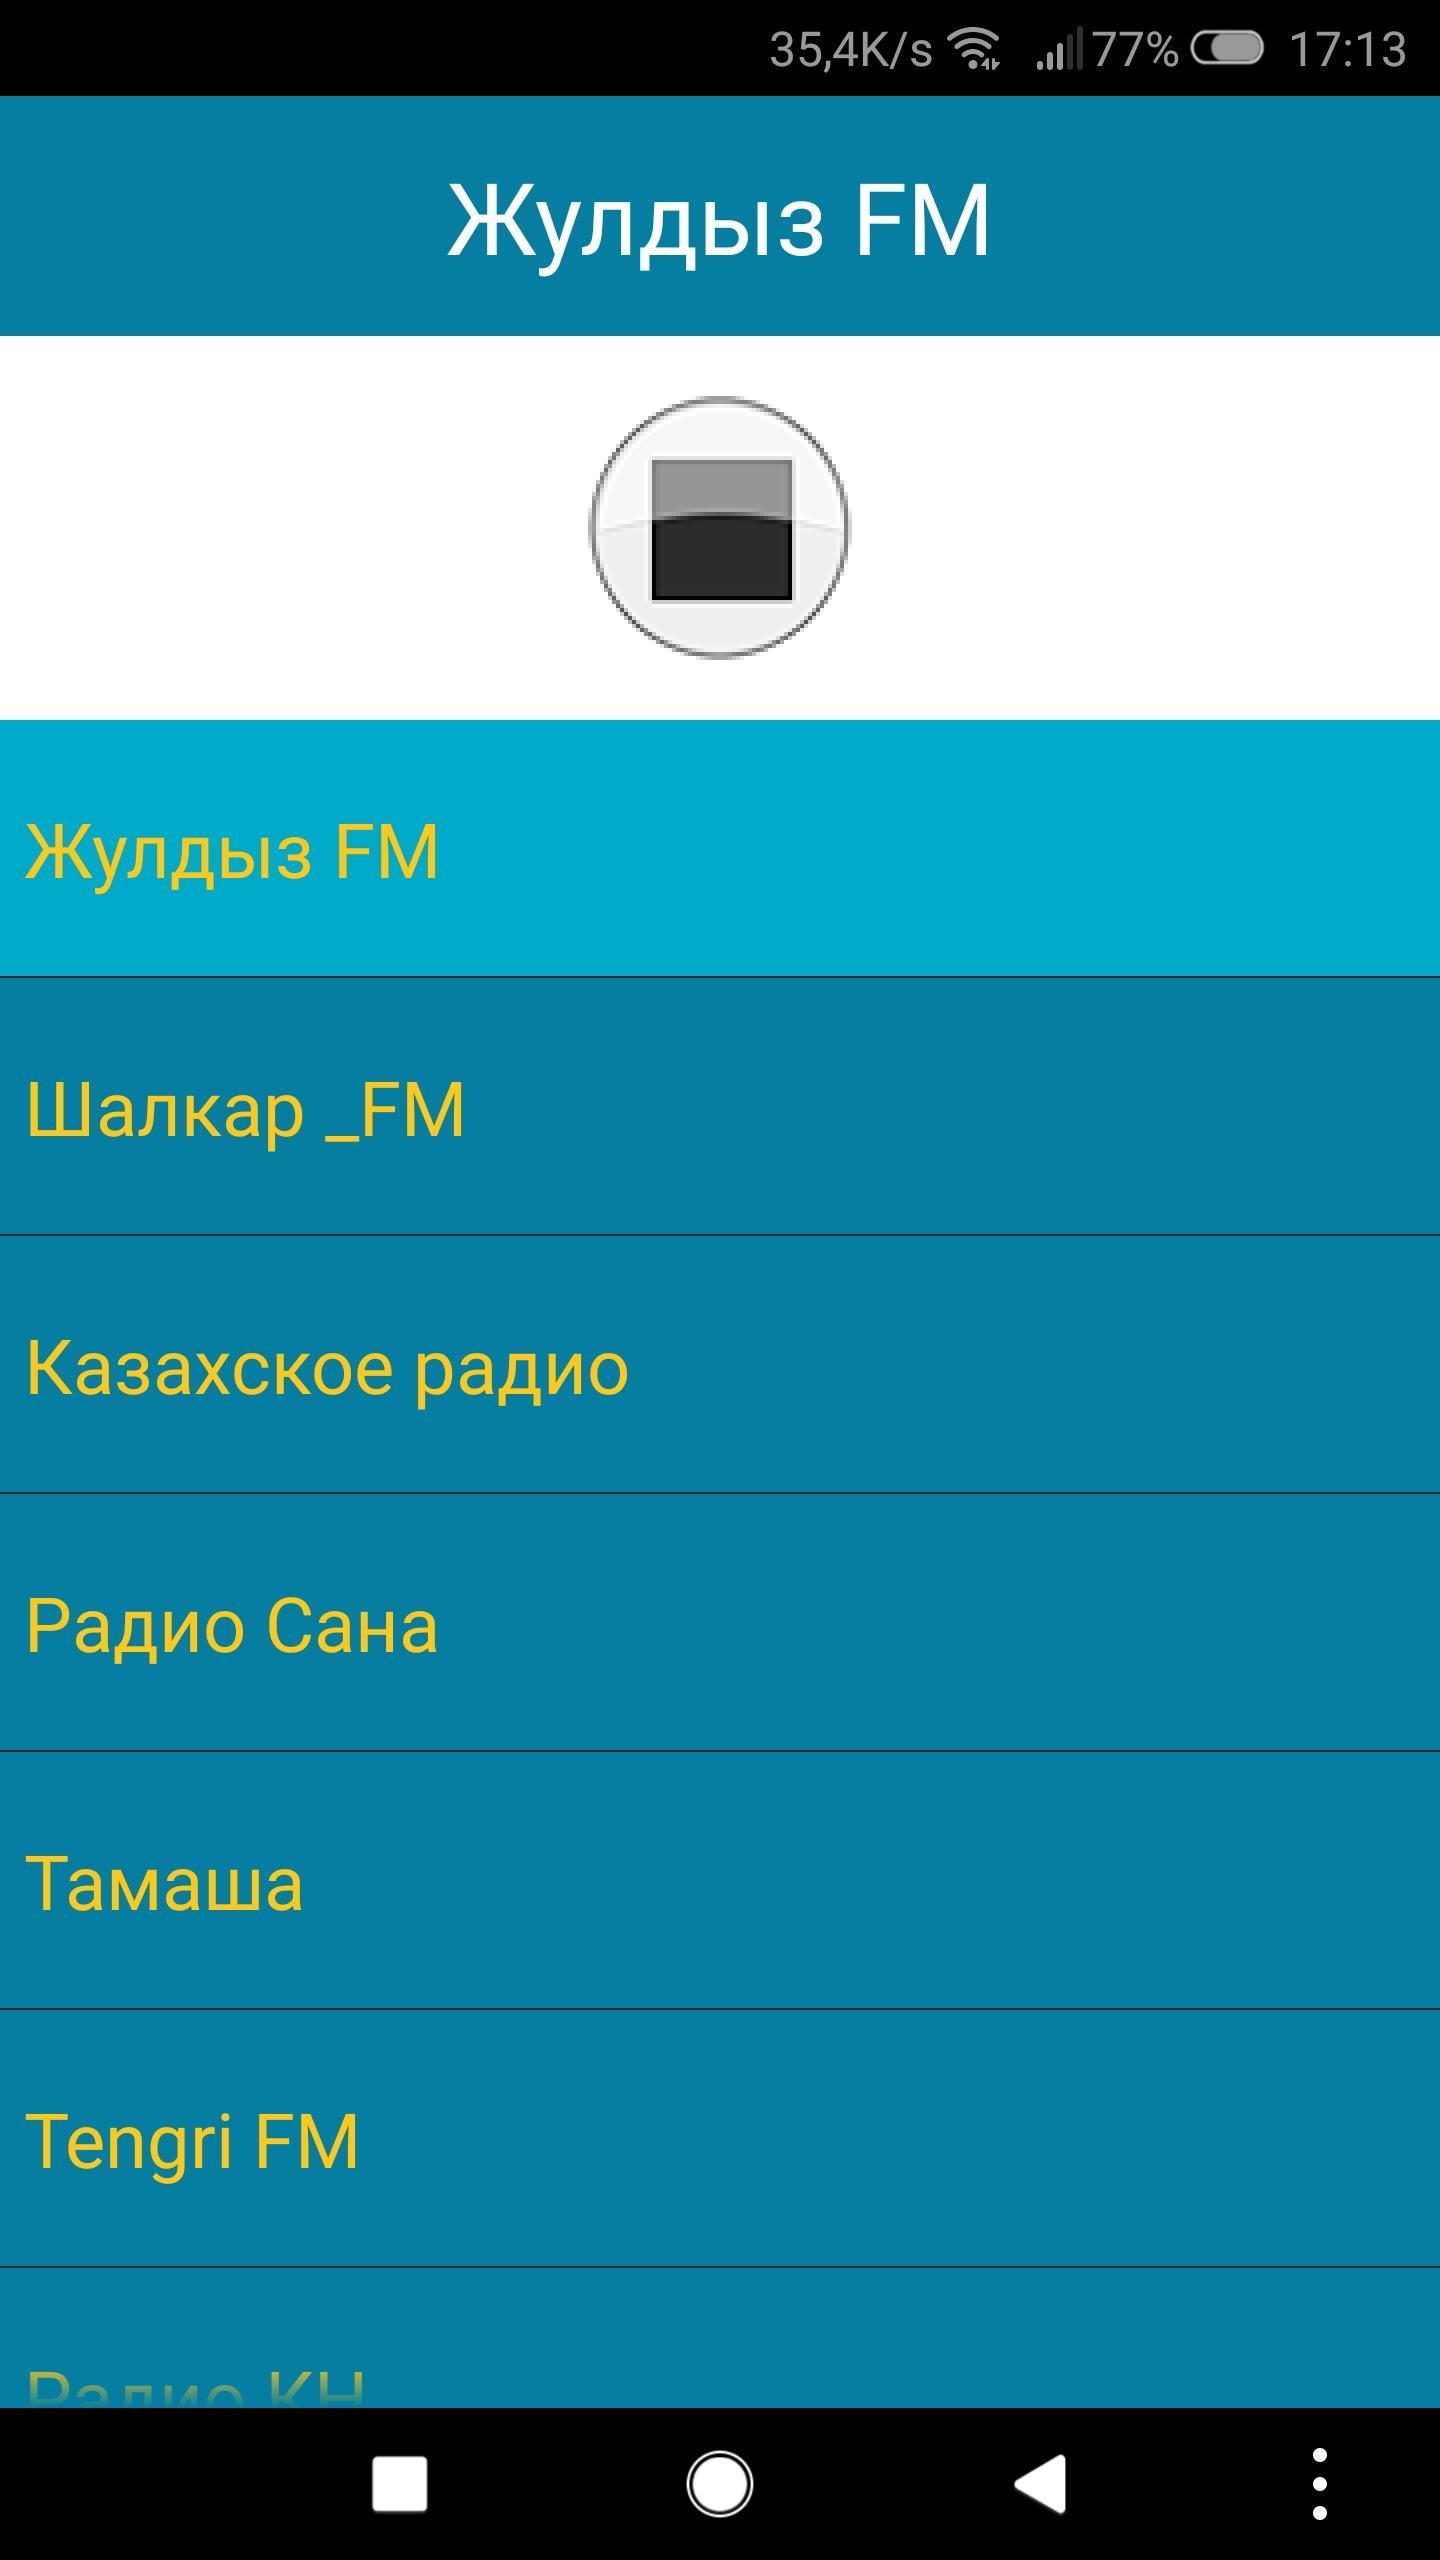 Включи казахское радио. Радиостанция Казахстан. Радио Казахстан. Казахстанская радиостанция.